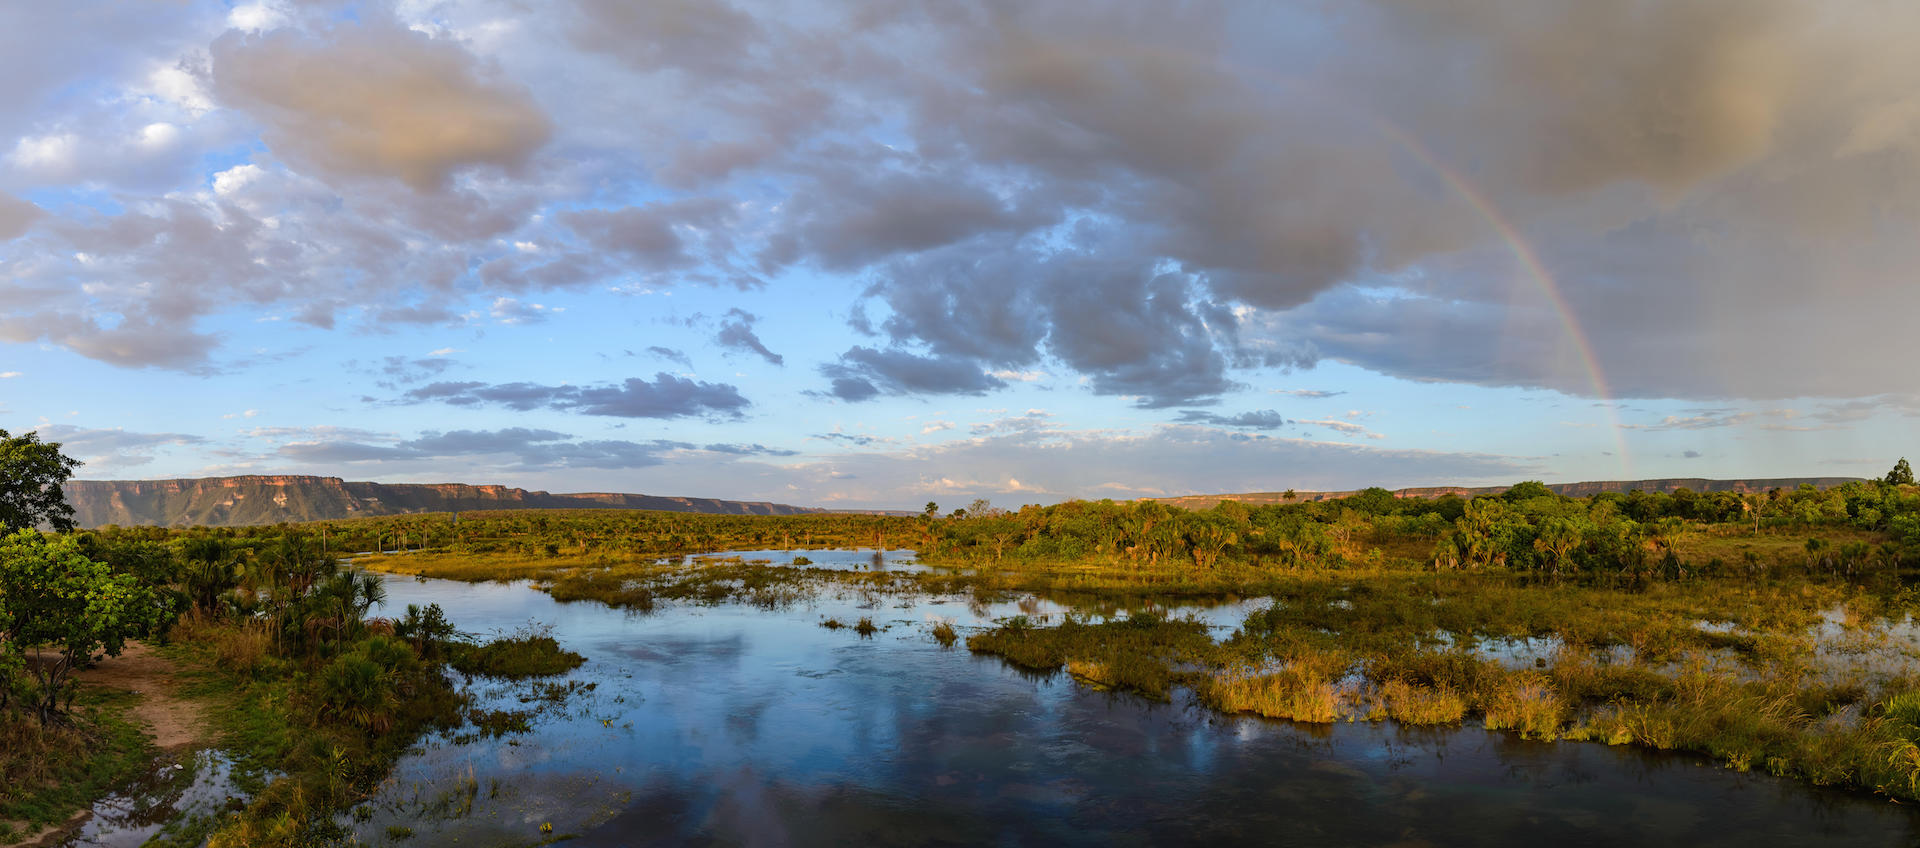 Water body in Brazil's Cerrado biome